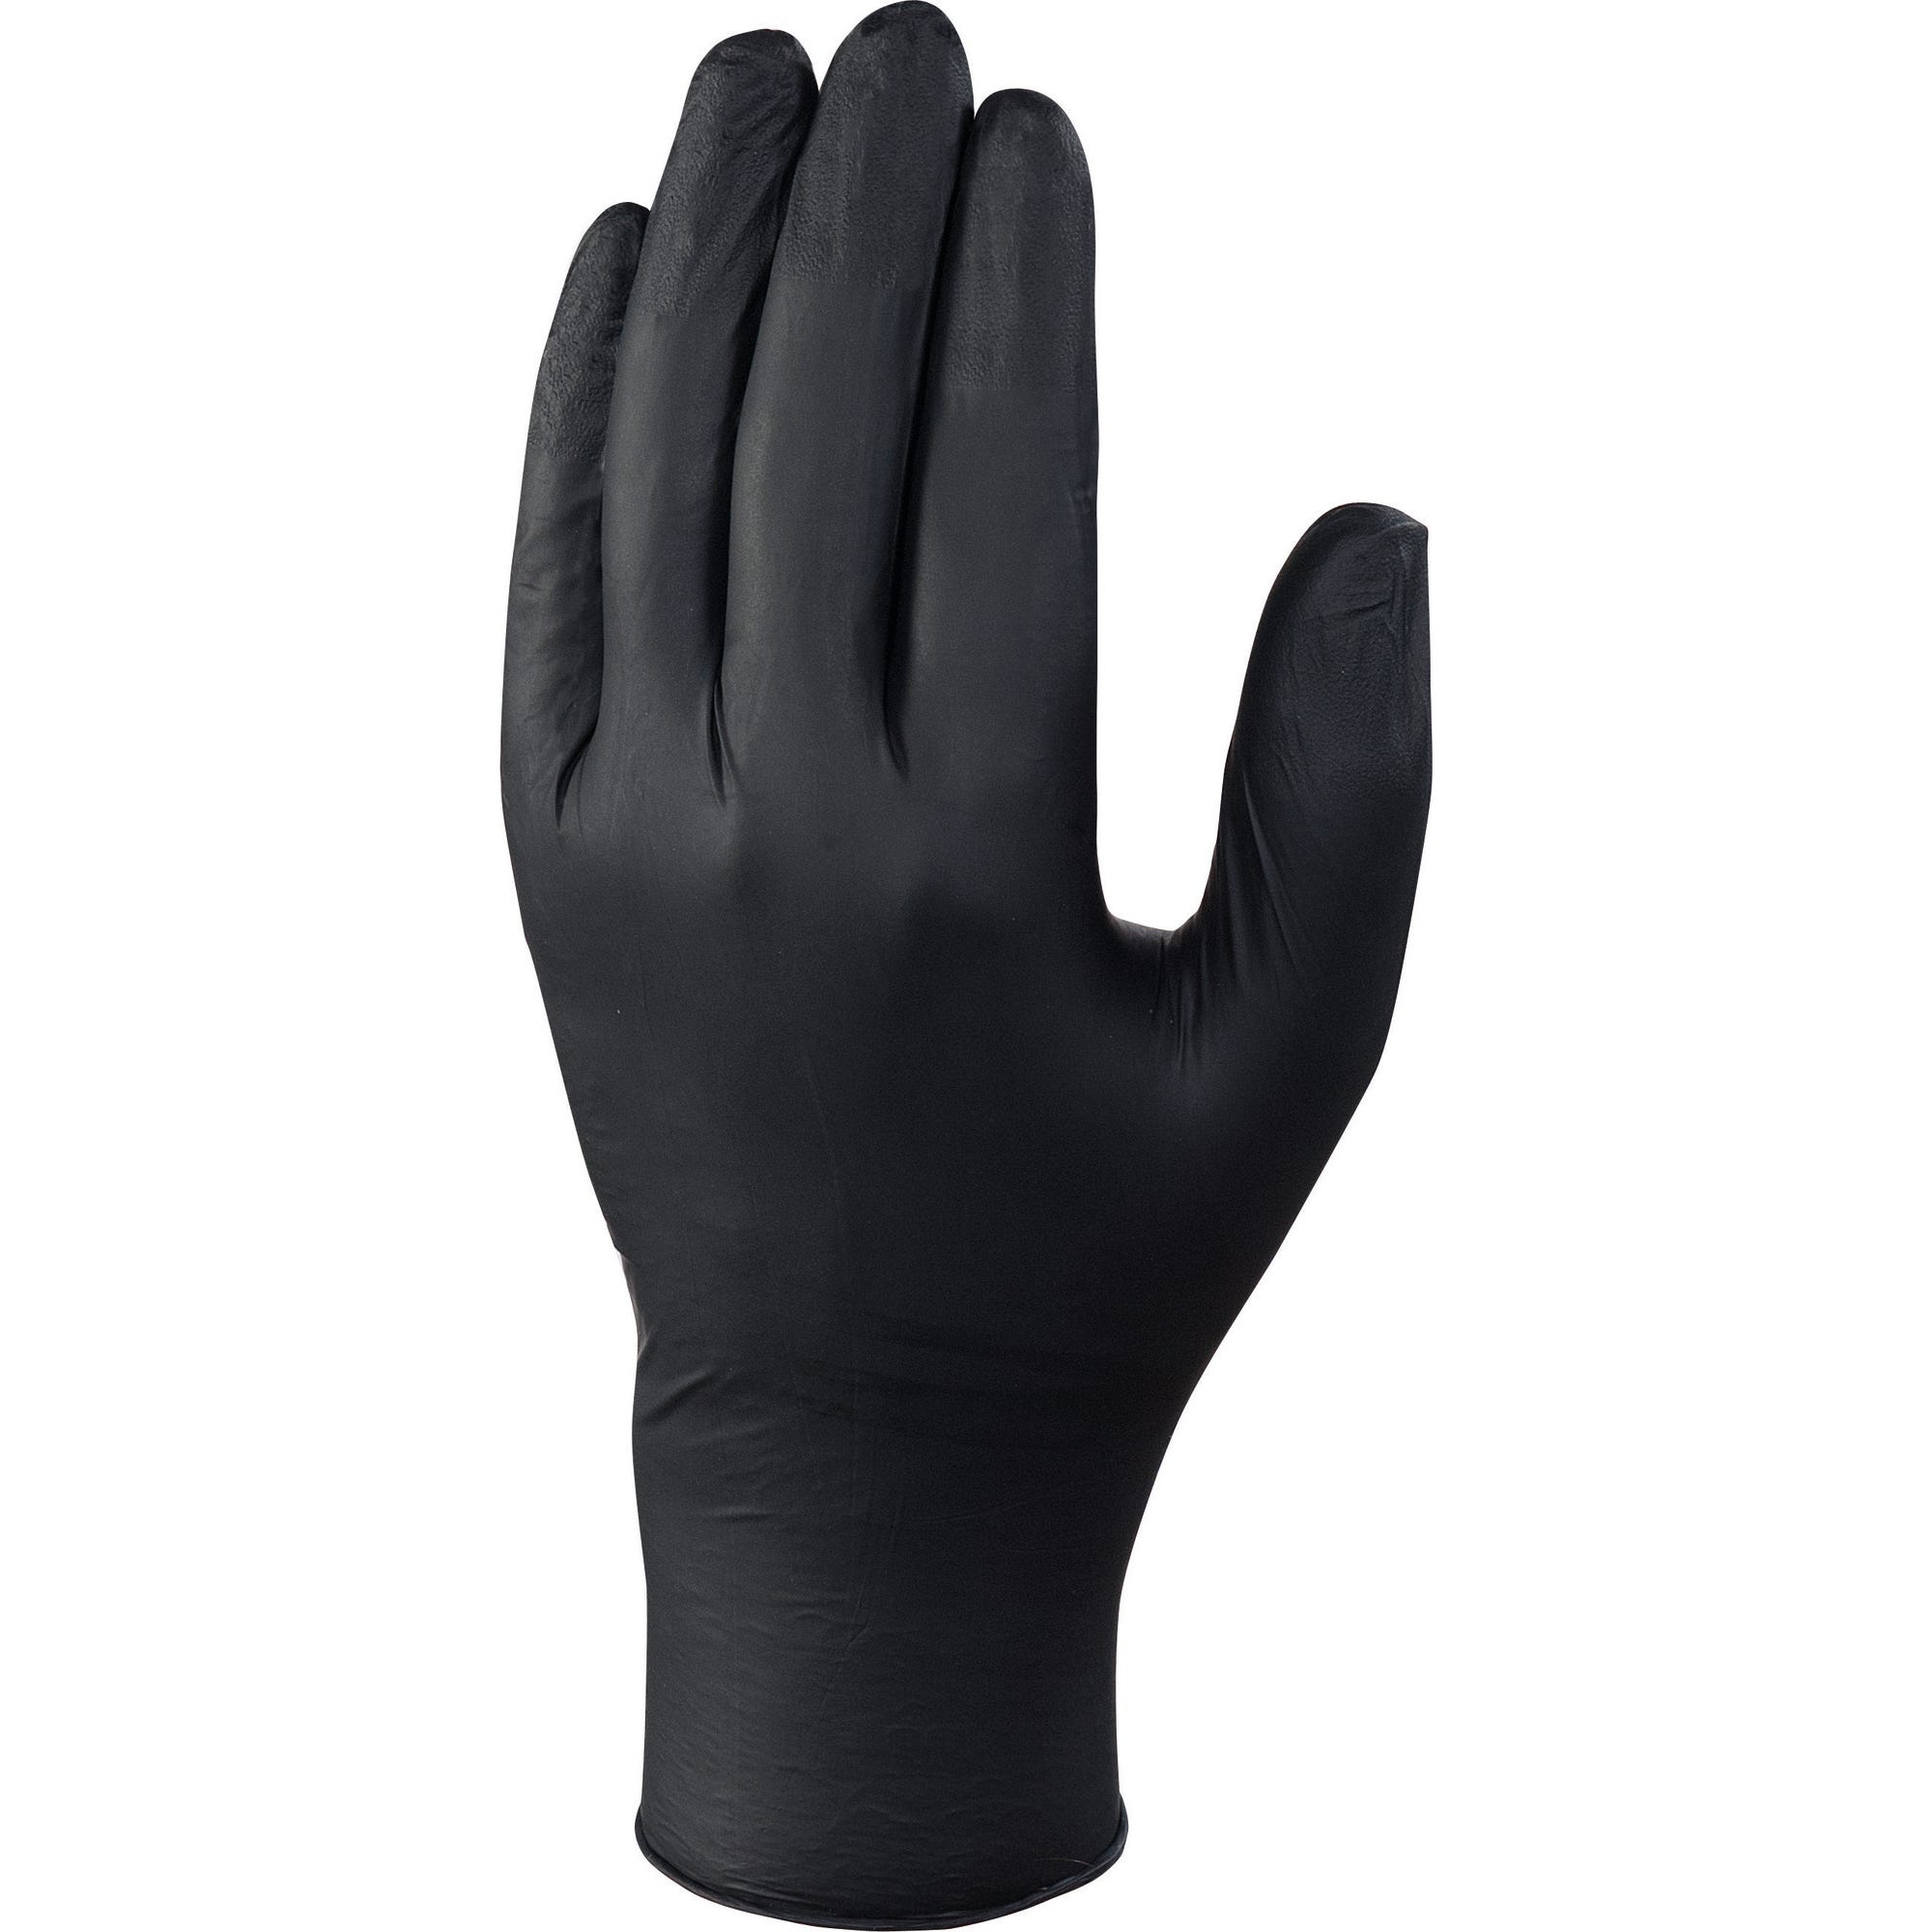 Boite de 100 gants nitrile noir T.8/9 - DELTA PLUS 0